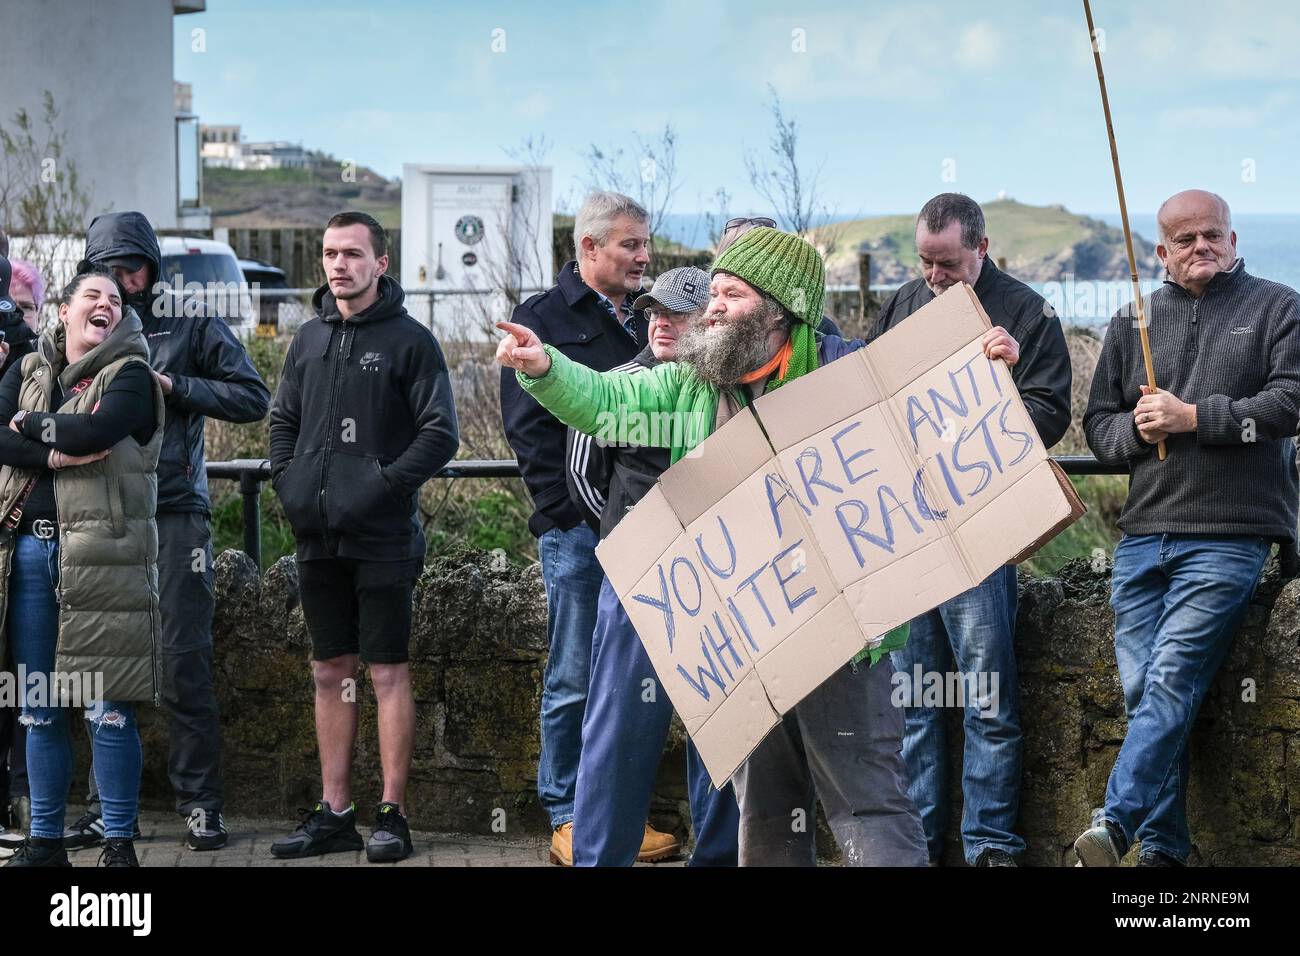 Un manifestante arrabbiato che tiene un cartellone di cartone e urla durante una manifestazione organizzata dal gruppo di destra Reform UK contro i richiedenti asilo pl Foto Stock